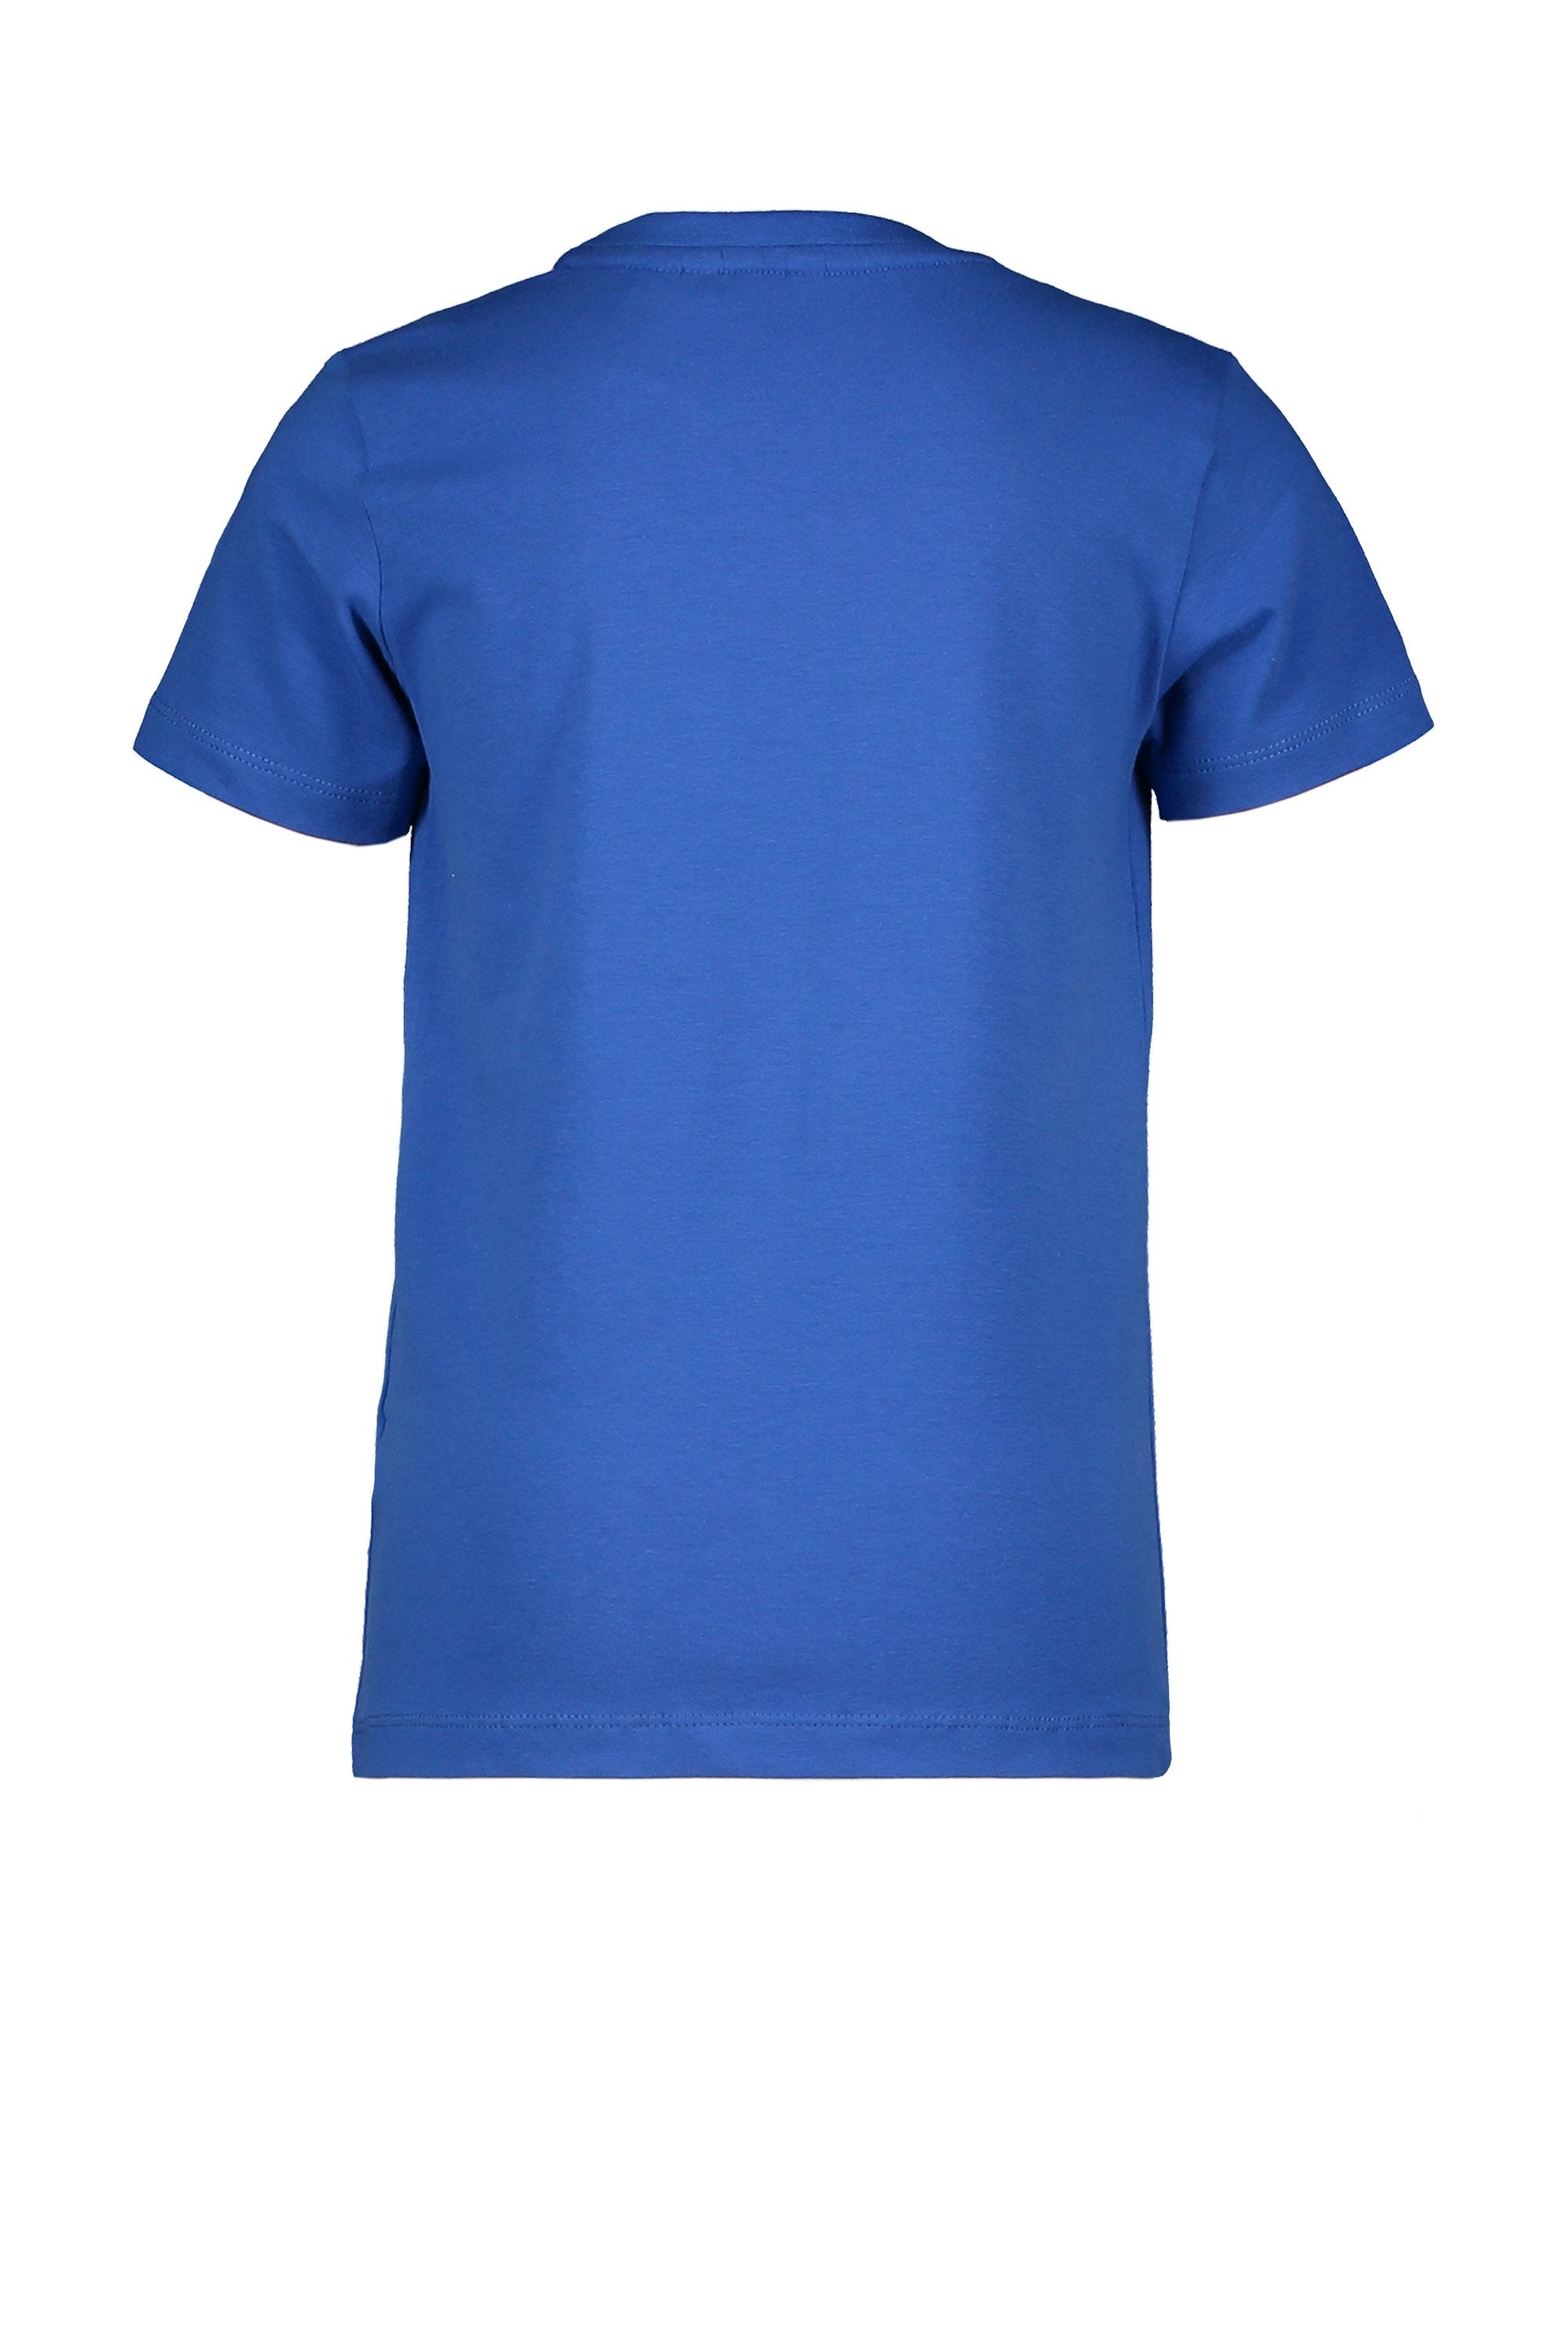 Jongens T-Shirt Chestprint van Moodstreet in de kleur Sporty Blue in maat 122/128.